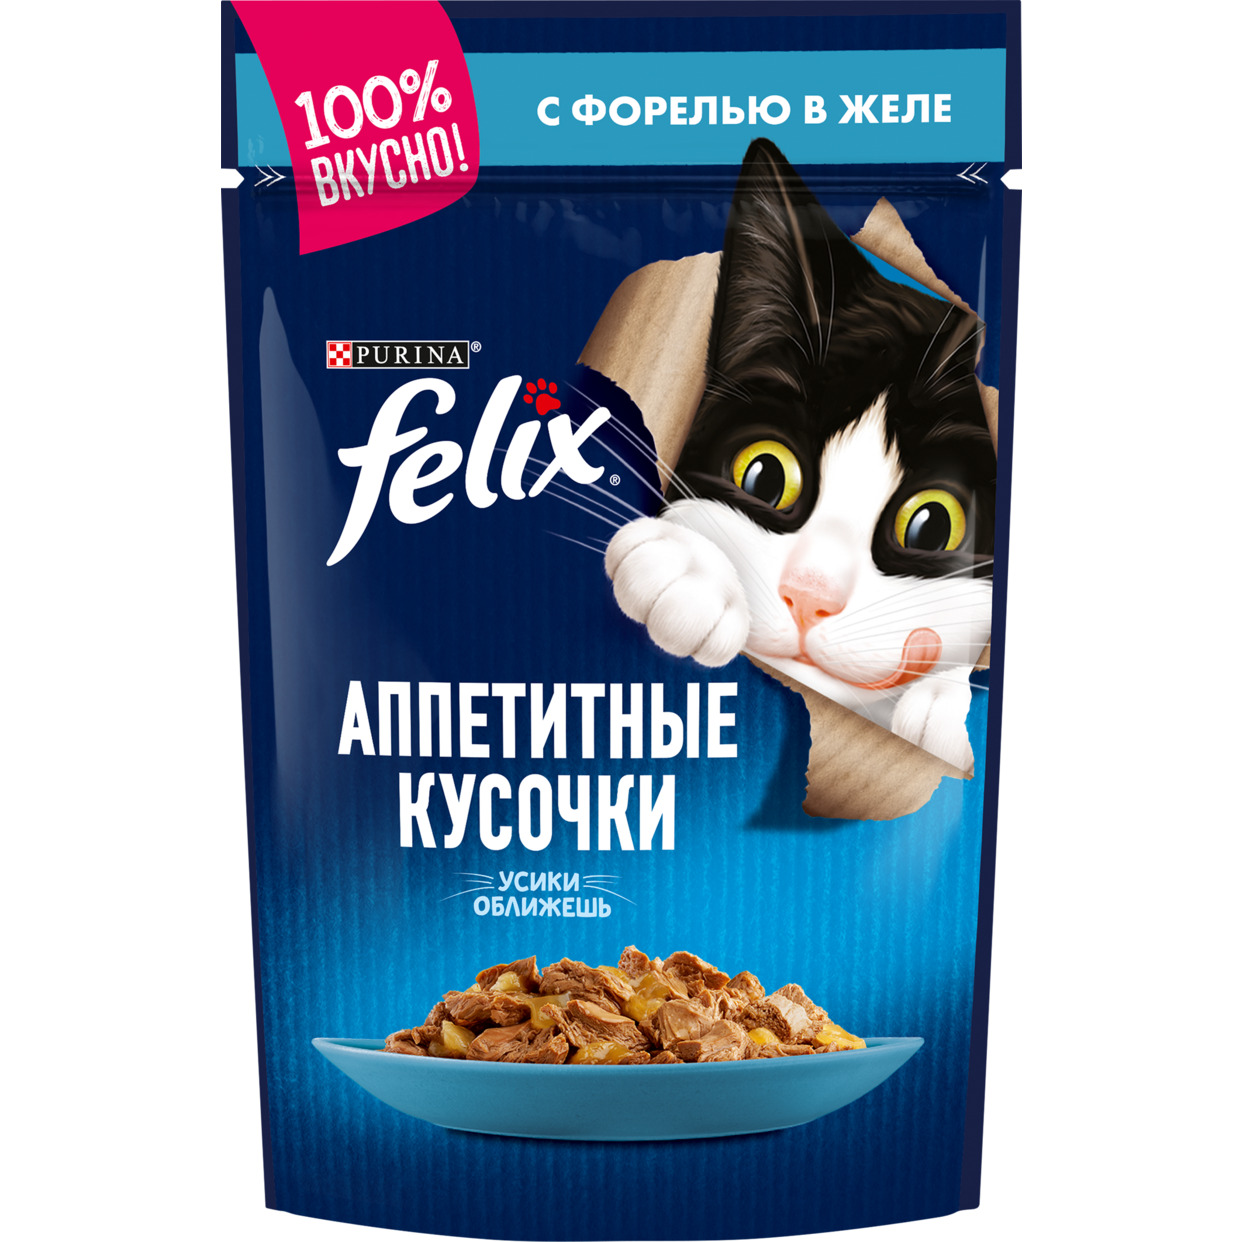 Корм для взрослых кошек Felix аппетитные кусочки с форелью в желе 85 г по акции в Пятерочке